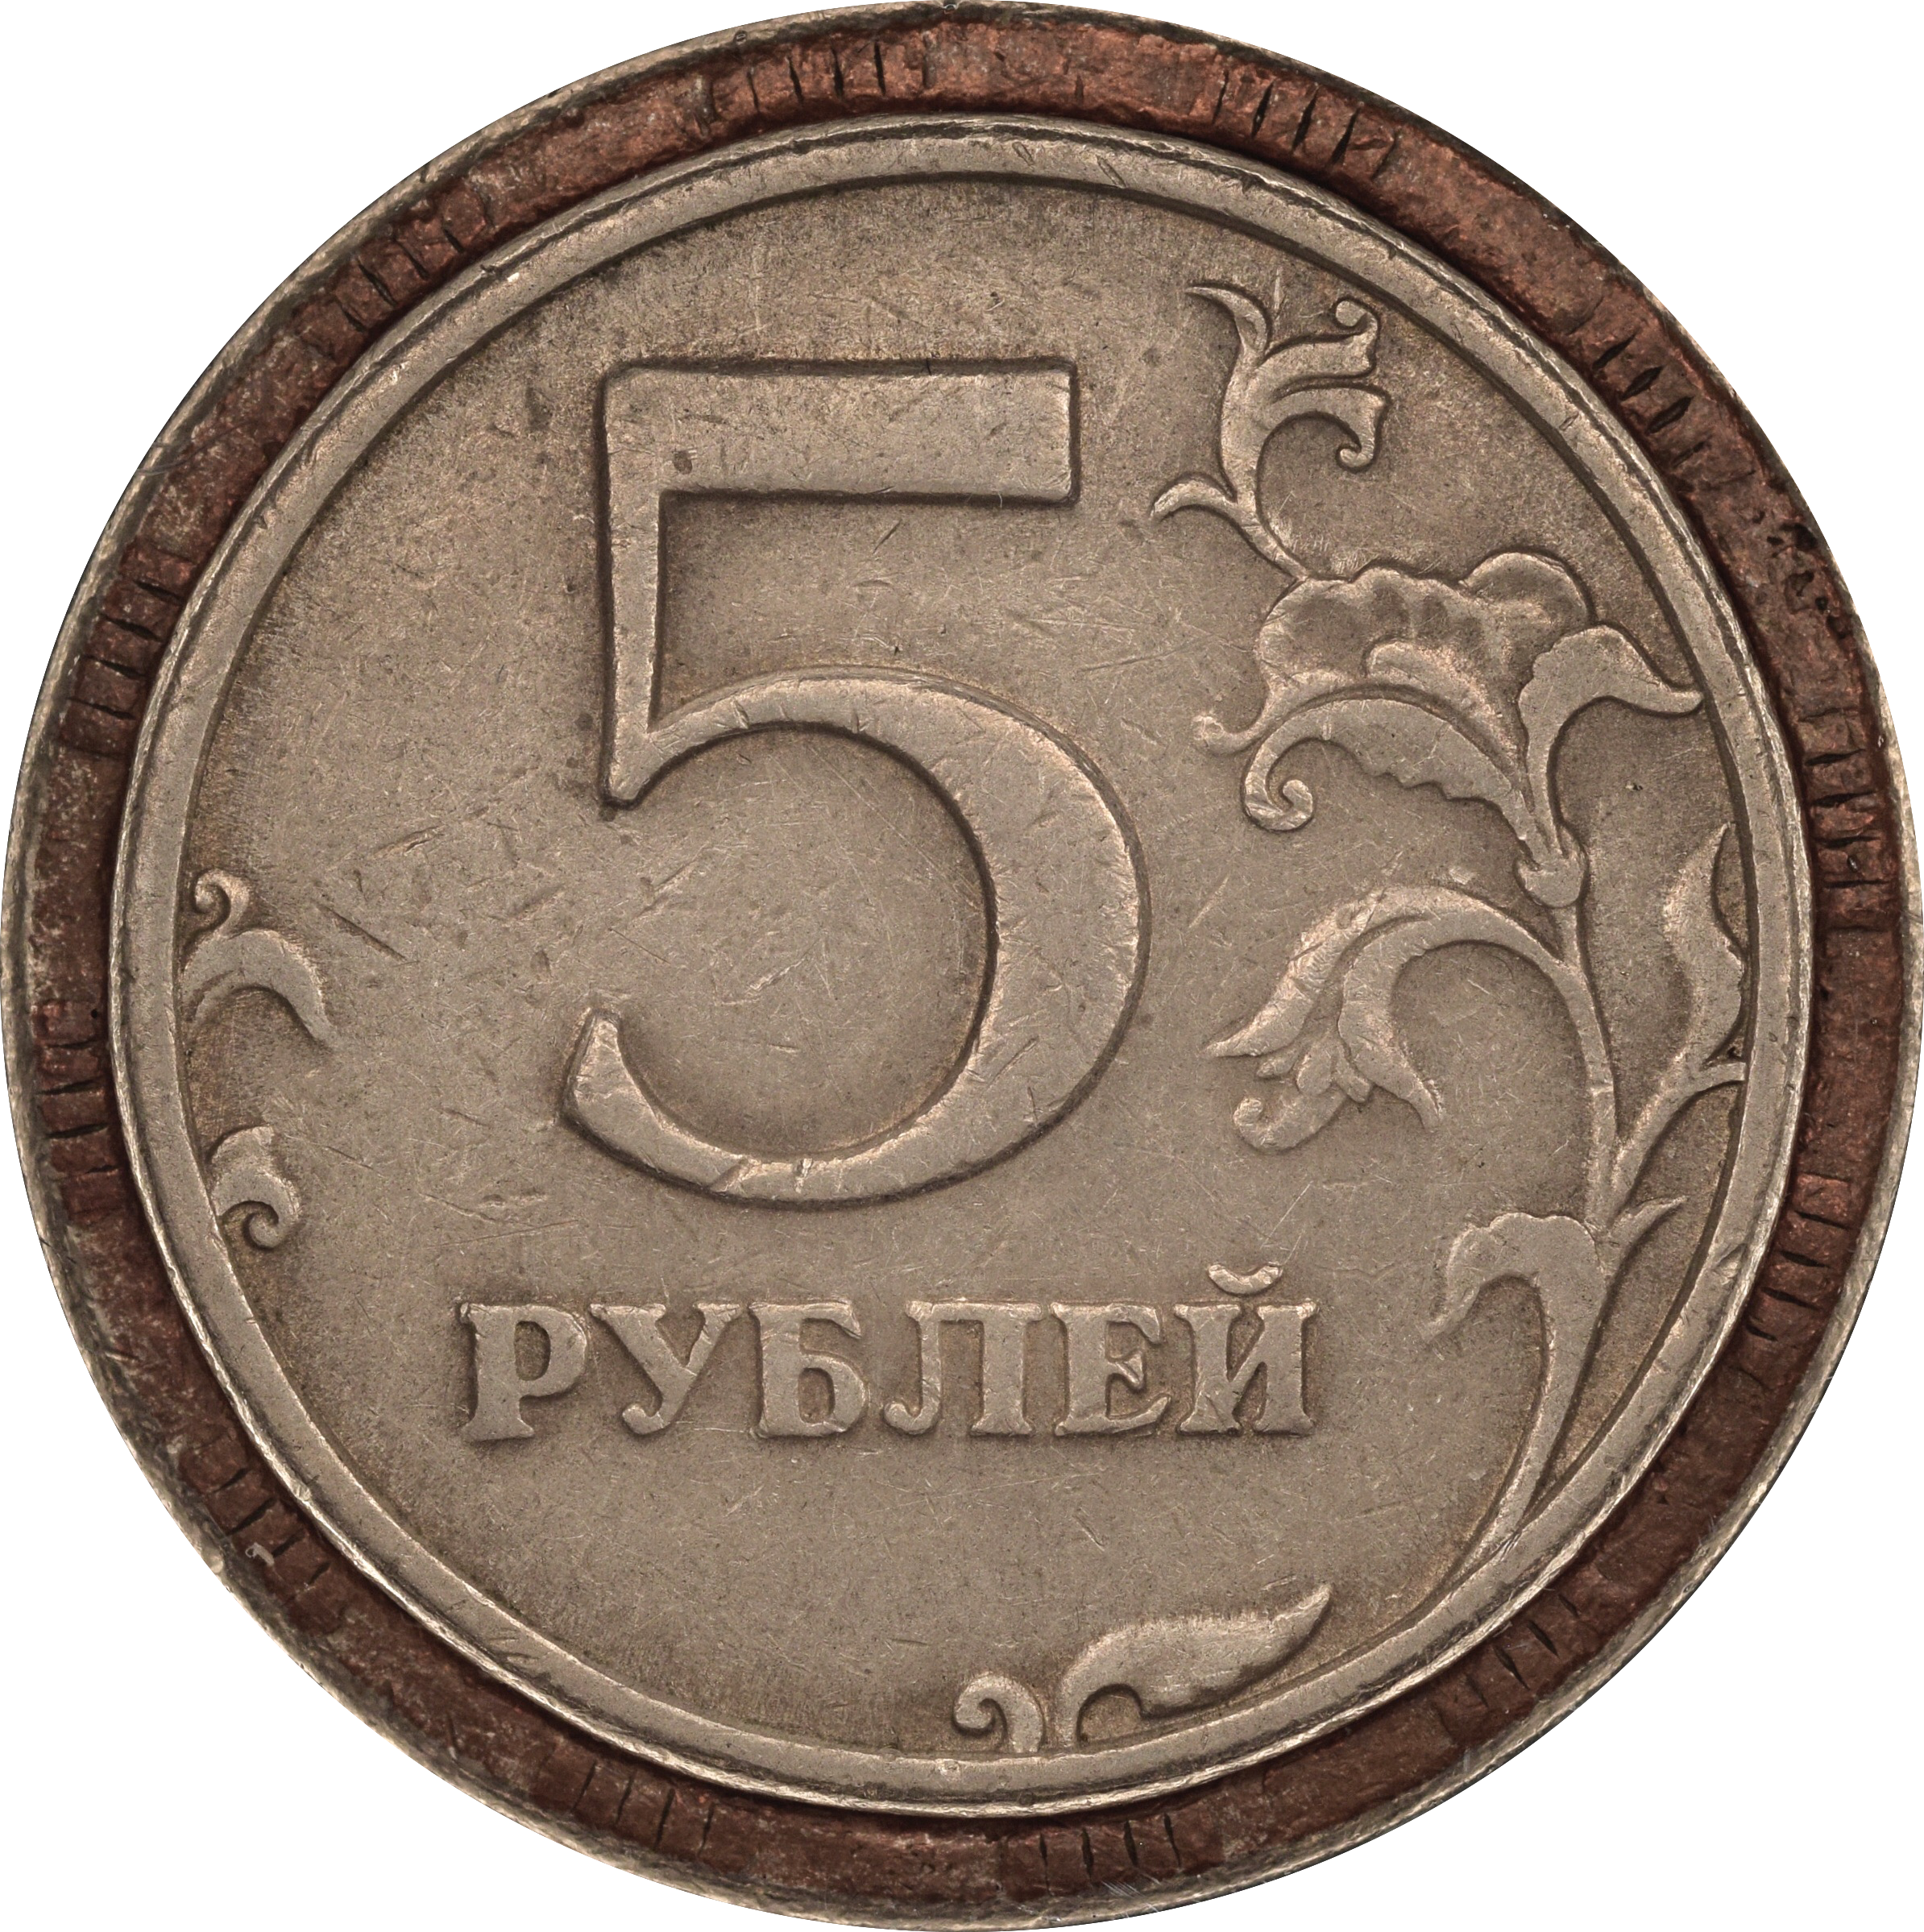 5 от 60 рублей. 5 Рублей. Пять рублей. Монета 5 рублей и цифра 5. 5 Рублей 2 шт.